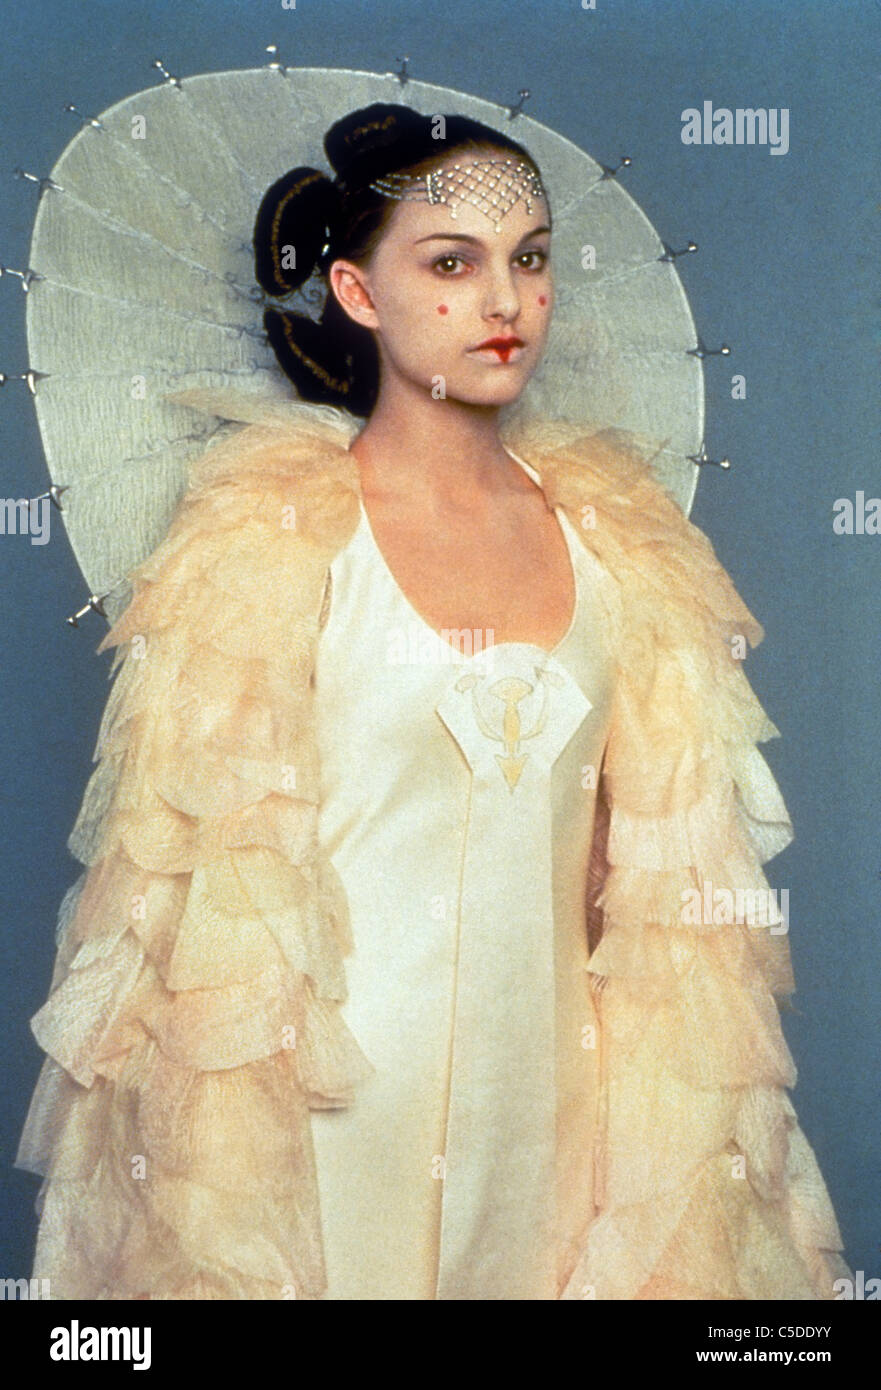 STAR WARS : Episode I - LA MENACE FANTÔME (1999), Natalie Portman (PADMÉ) CARACTÈRE LUCASFILM CRÉDIT SWPH Banque D'Images